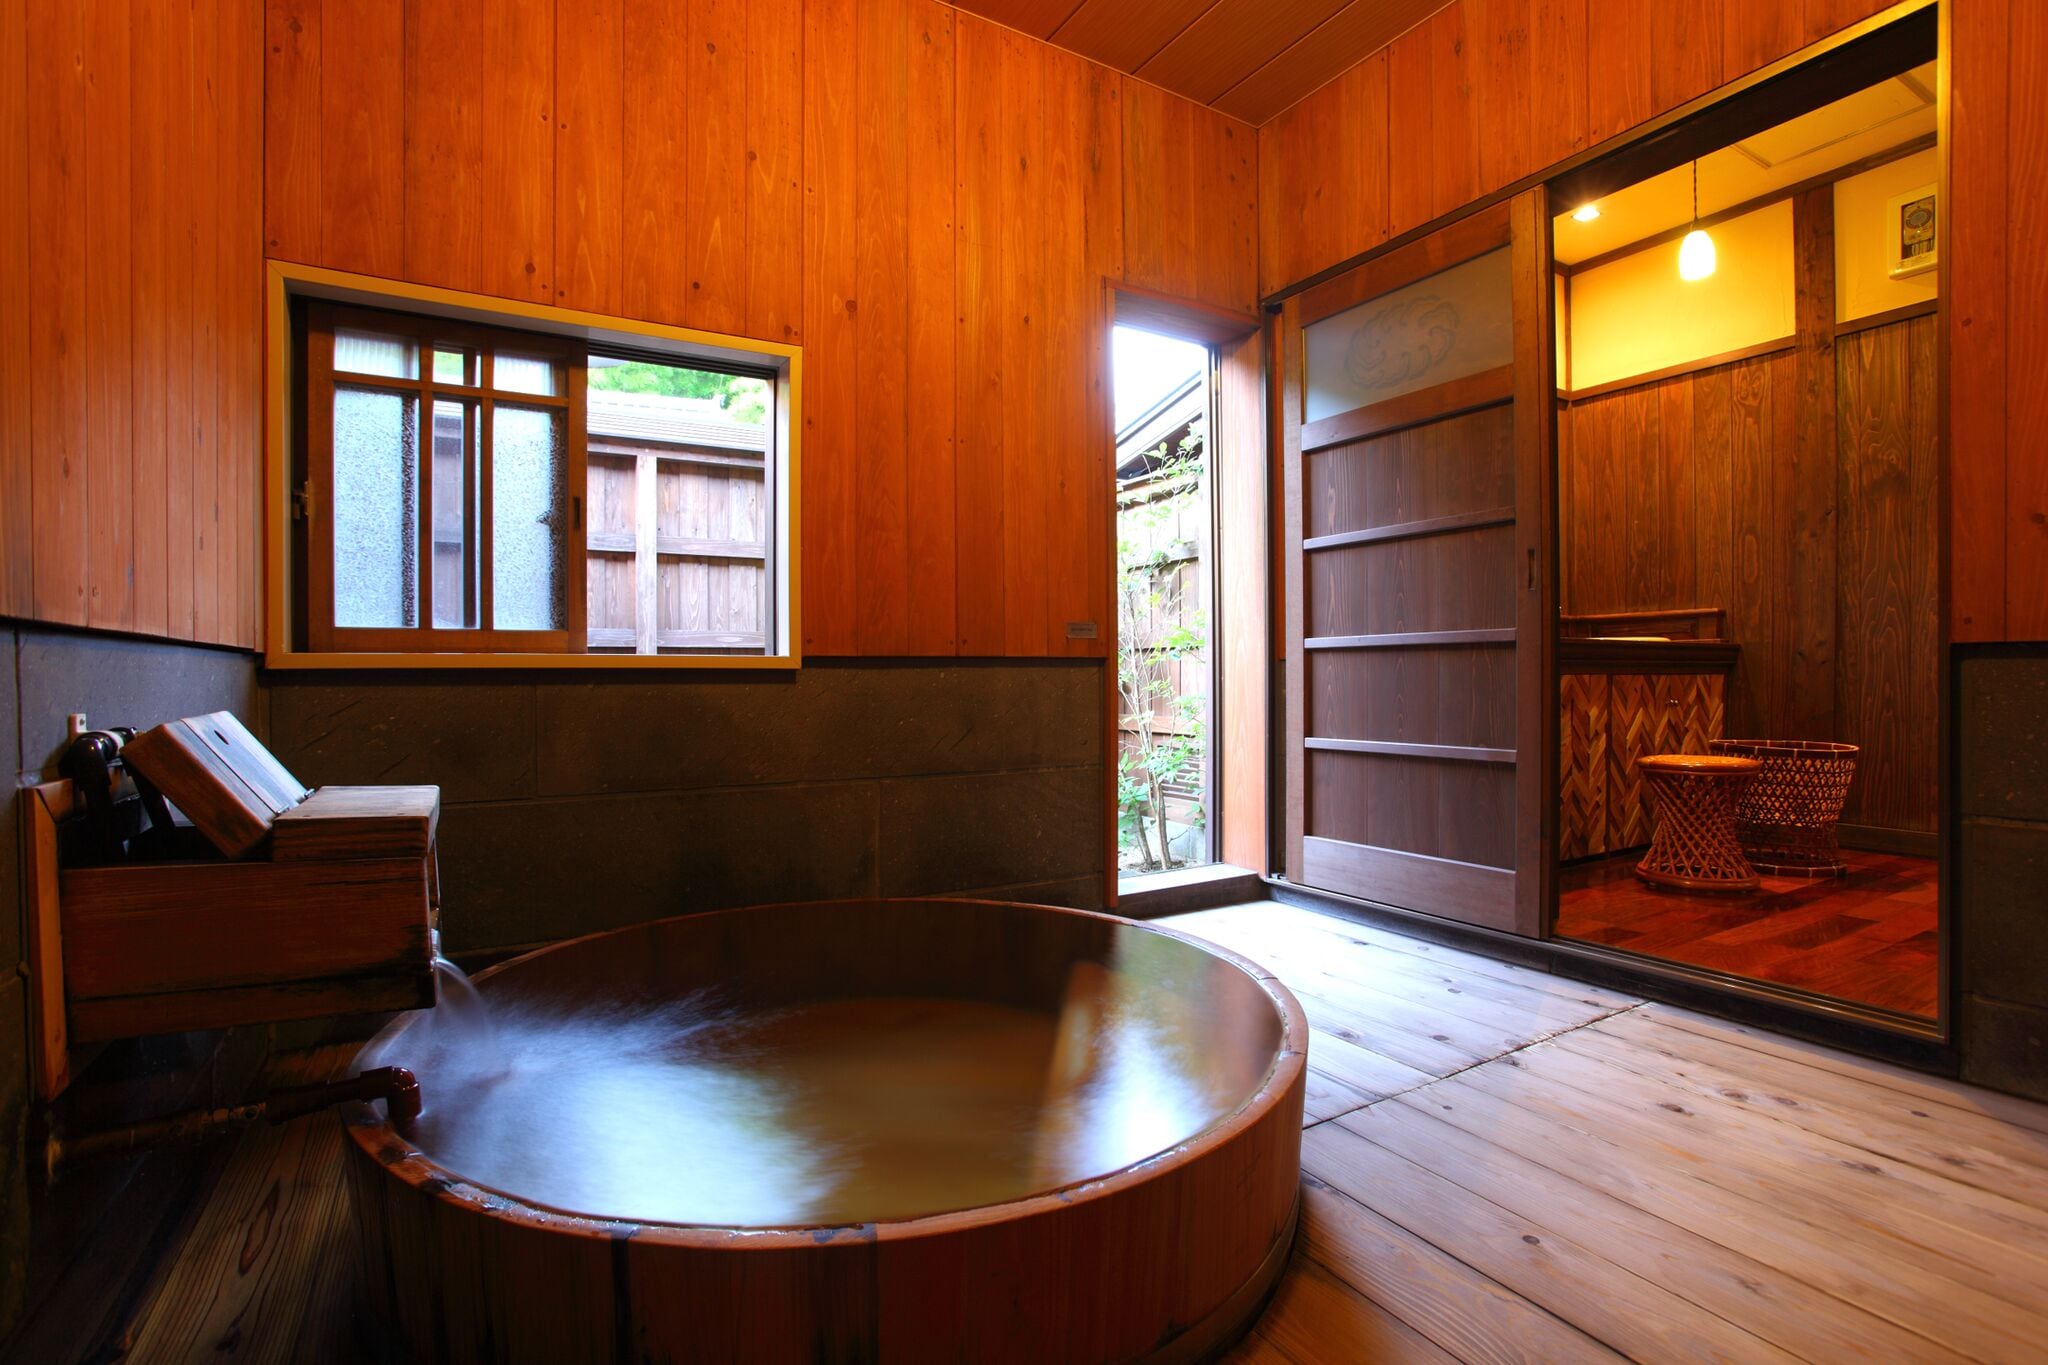 【객실 목욕】 “단풍”에는 큰 목조의 노송 나무 통 목욕탕과 노천탕이 갖추어져 있습니다